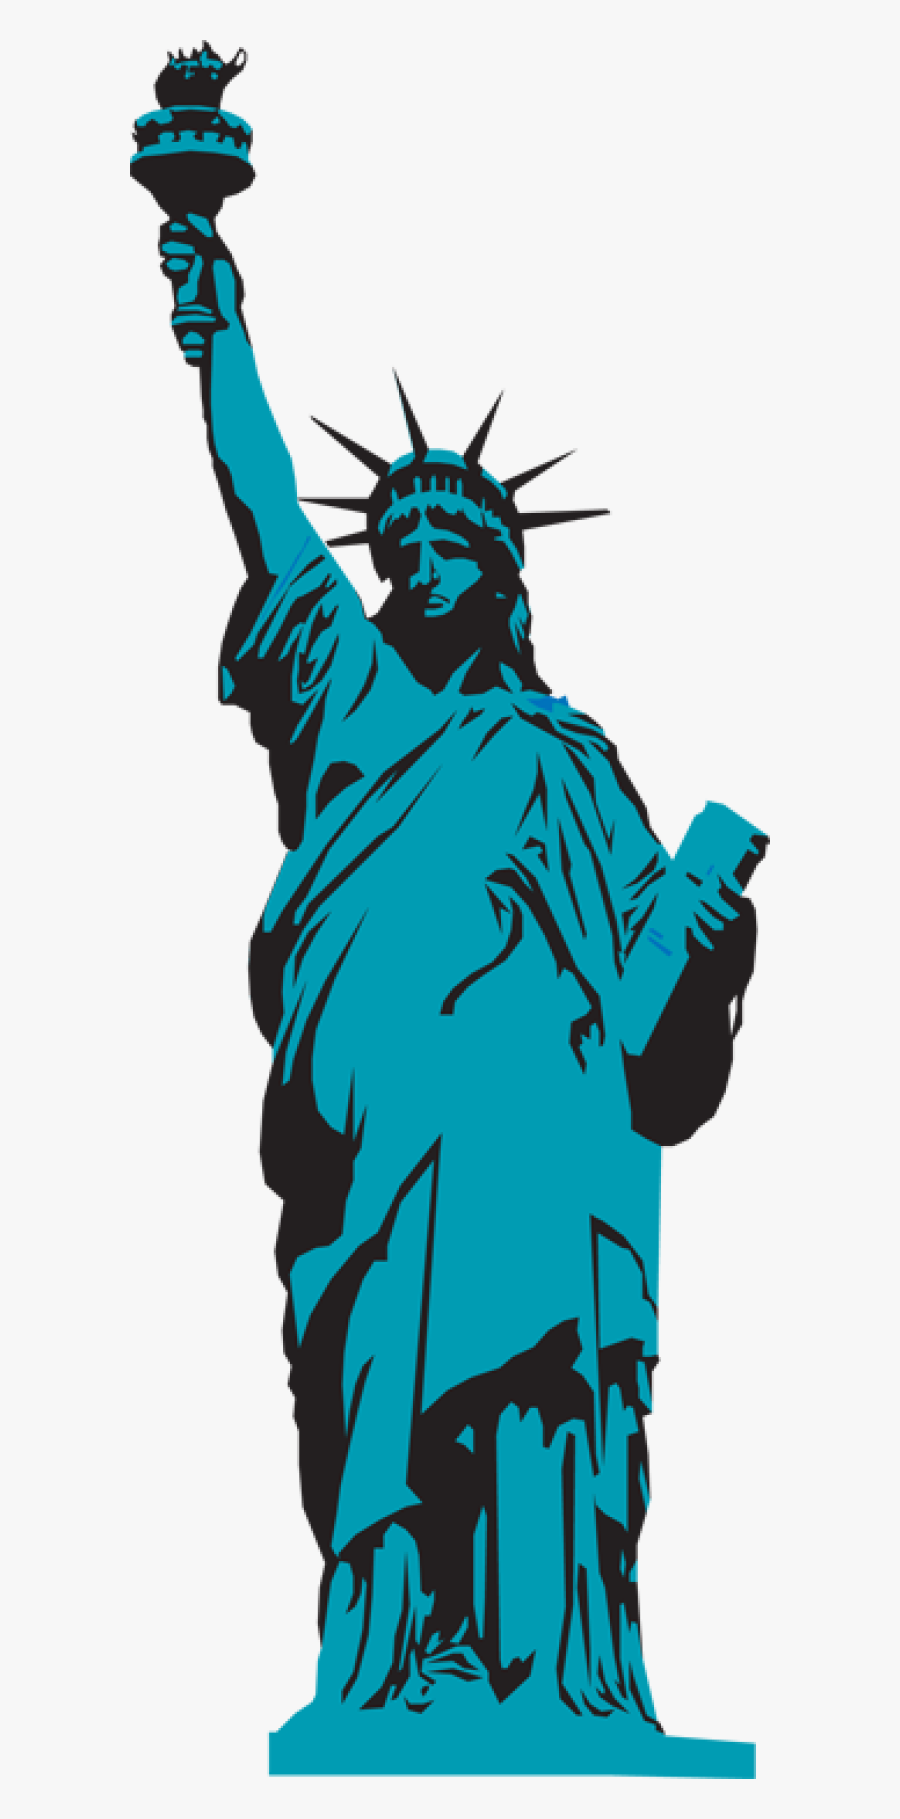 Statue Of Liberty Clip Art - Statue Of Liberty, Transparent Clipart